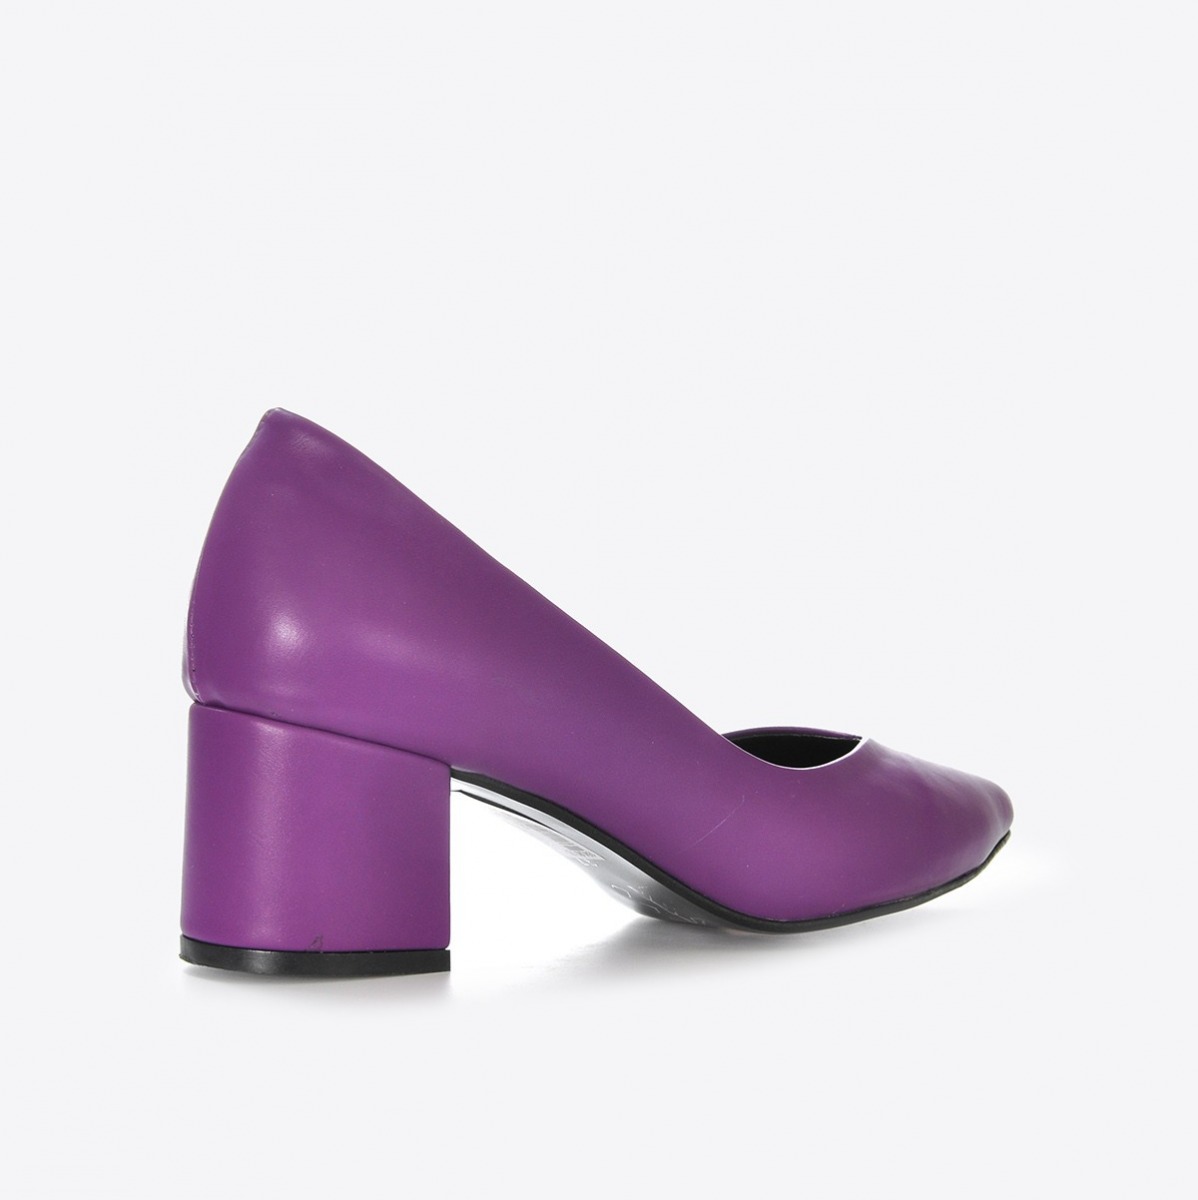 Flo Kadın Mor Klasik Topuklu Ayakkabı VZN21-040Y. 5